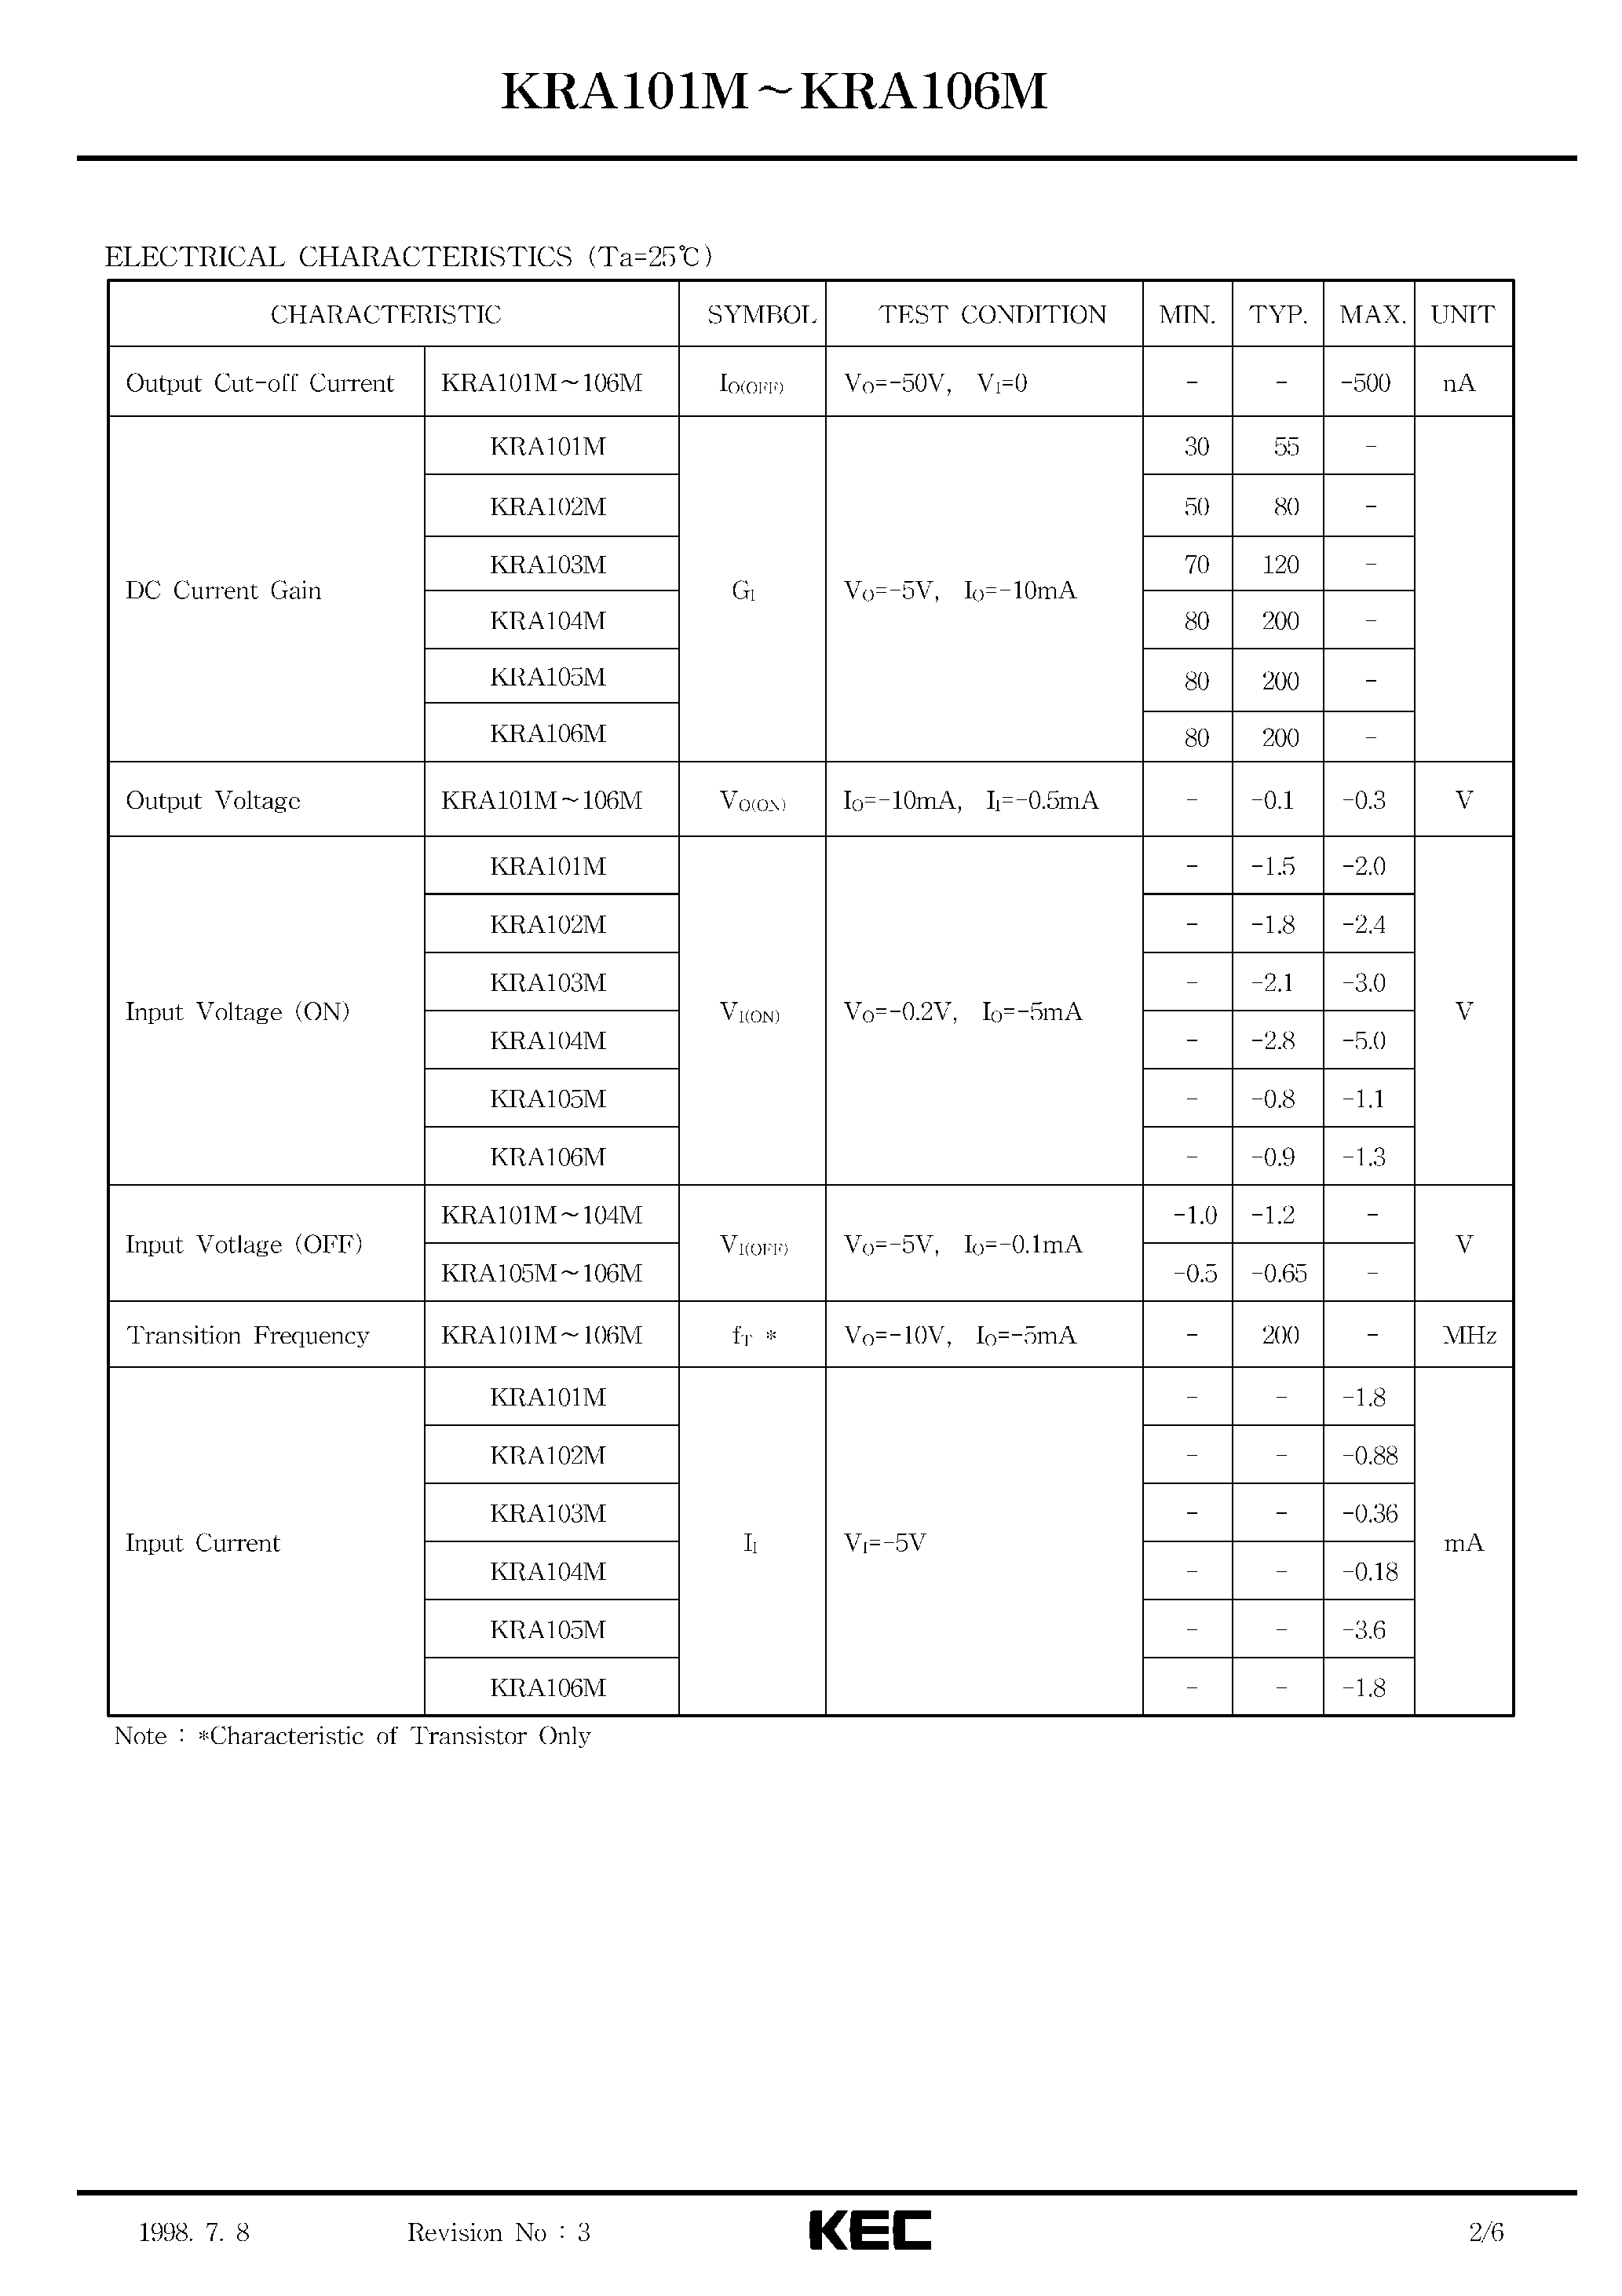 Datasheet KRA101M - (KRA101M - KRA106M) EPITAXIAL PLANAR PNP TRANSISTOR page 2